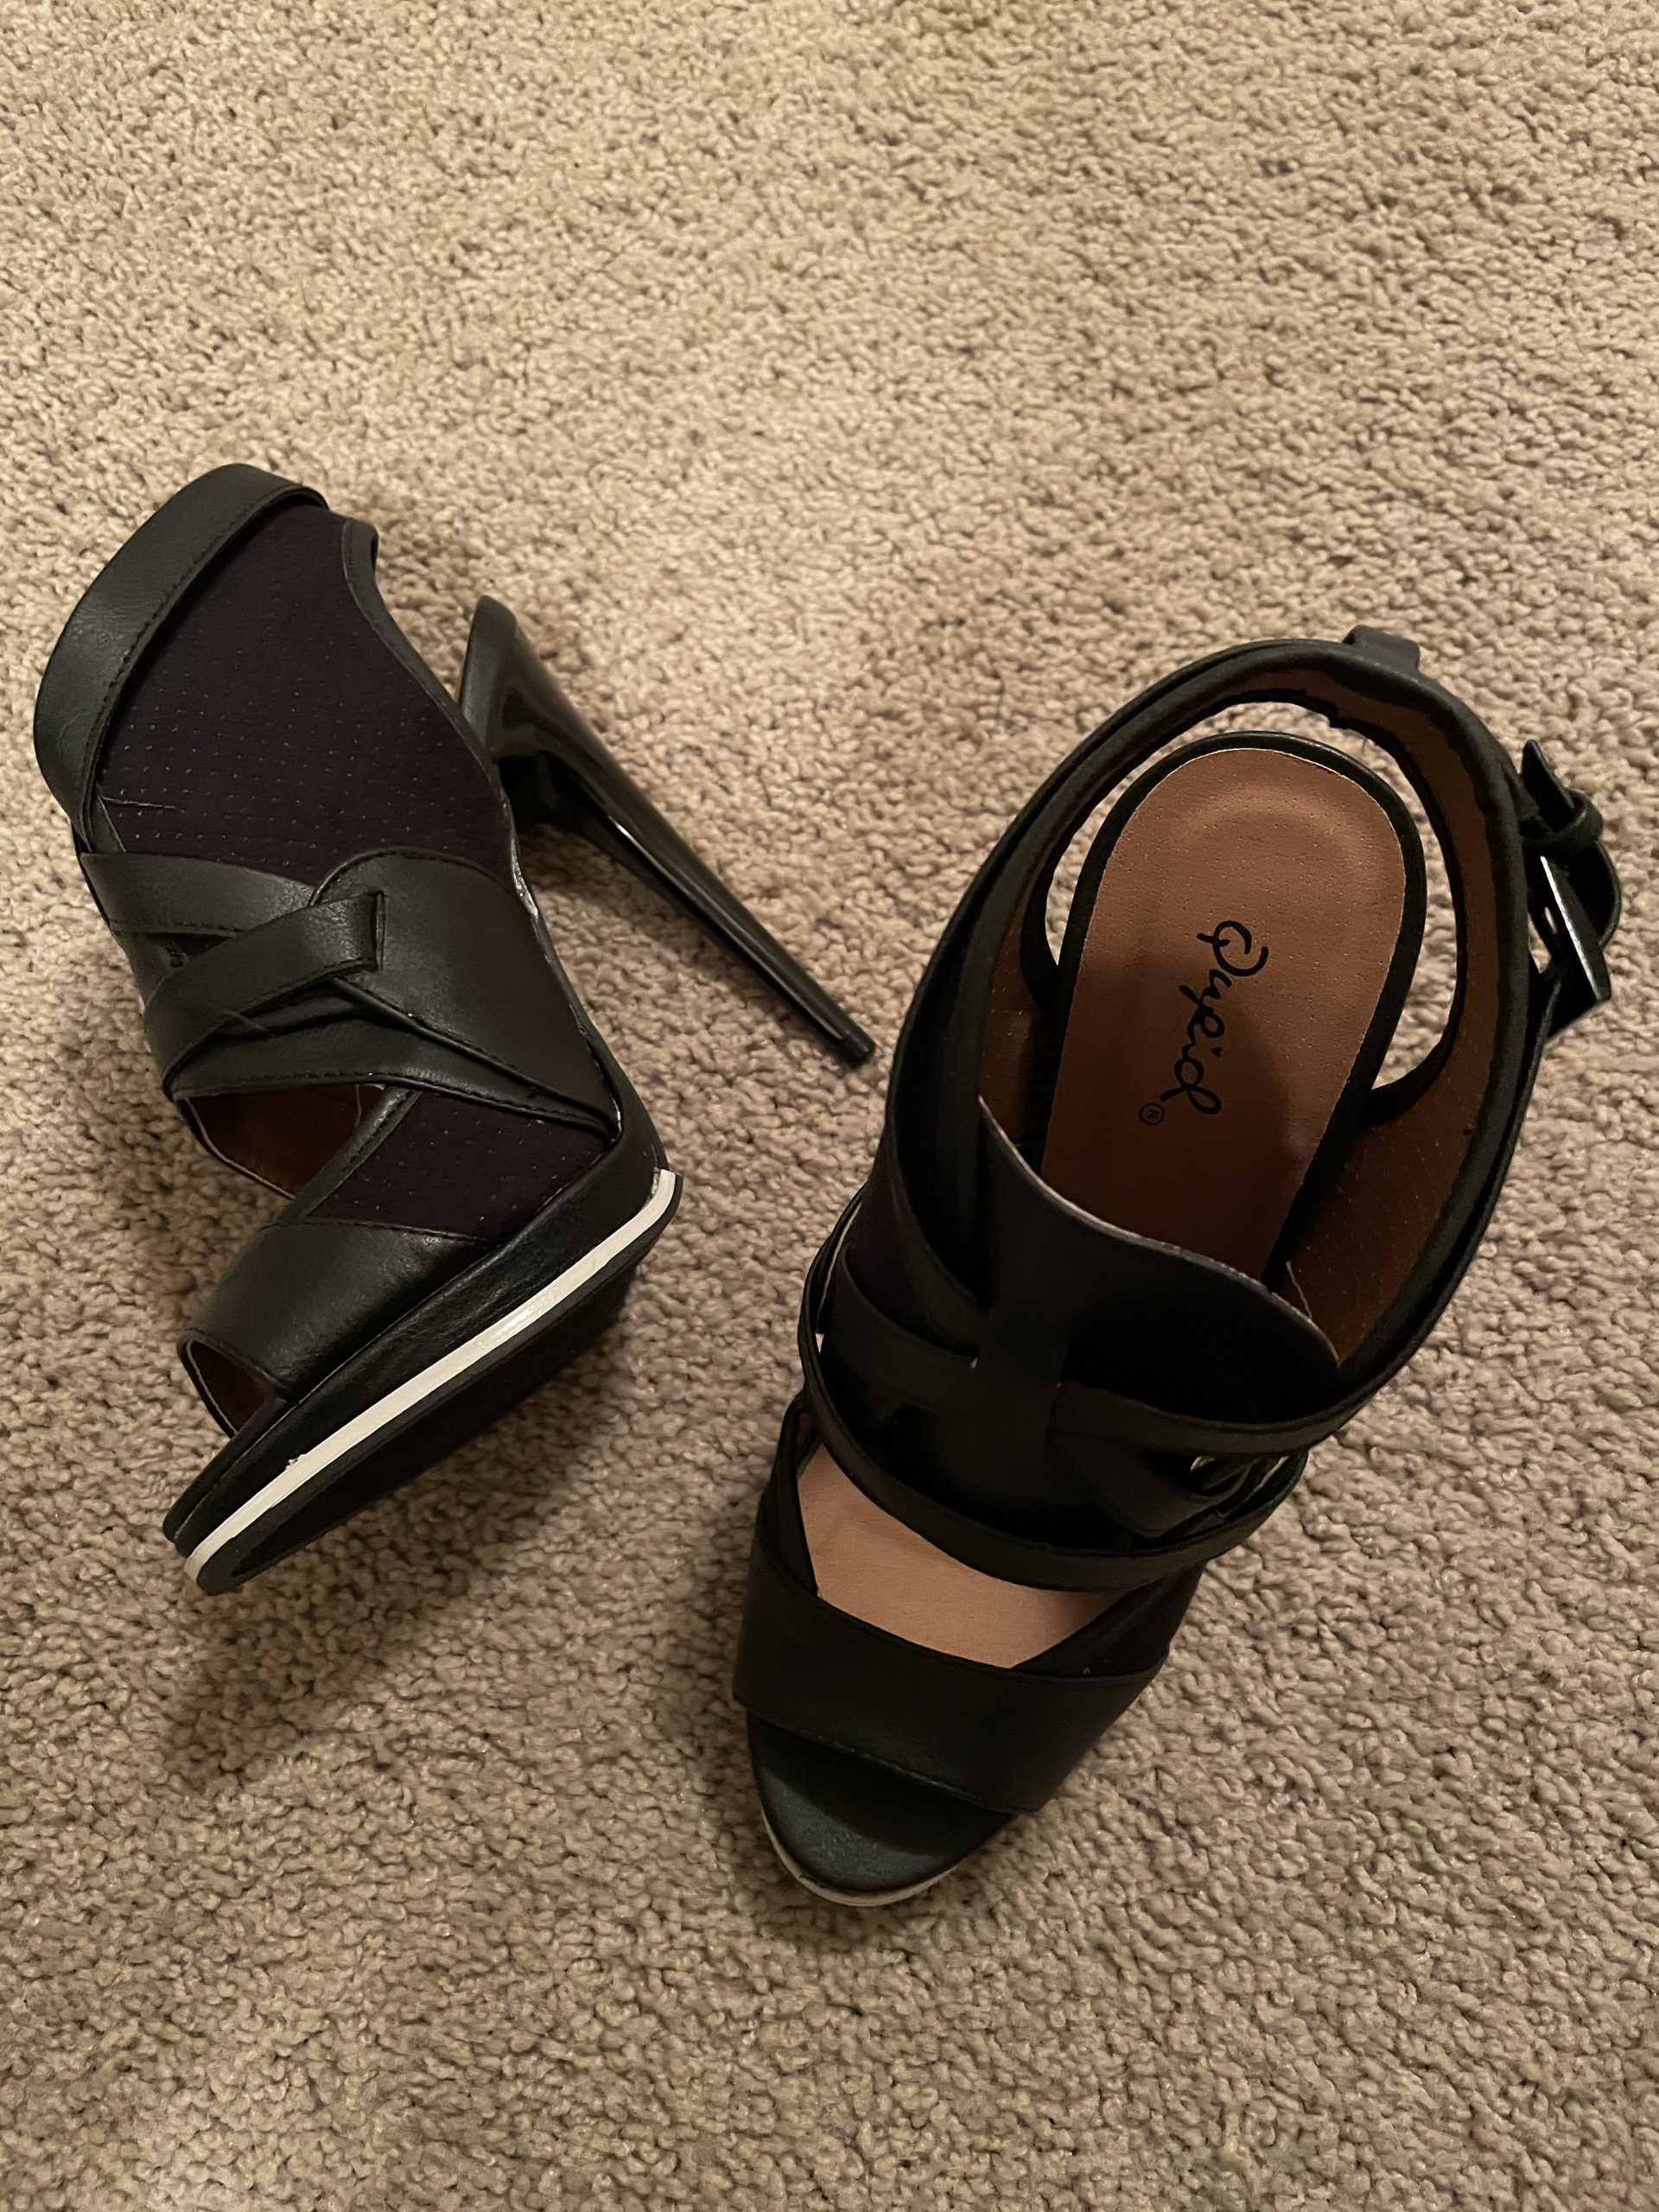 Black strappy heels – Shop Bryci – Memorabilia, Merch, and Original Artwork